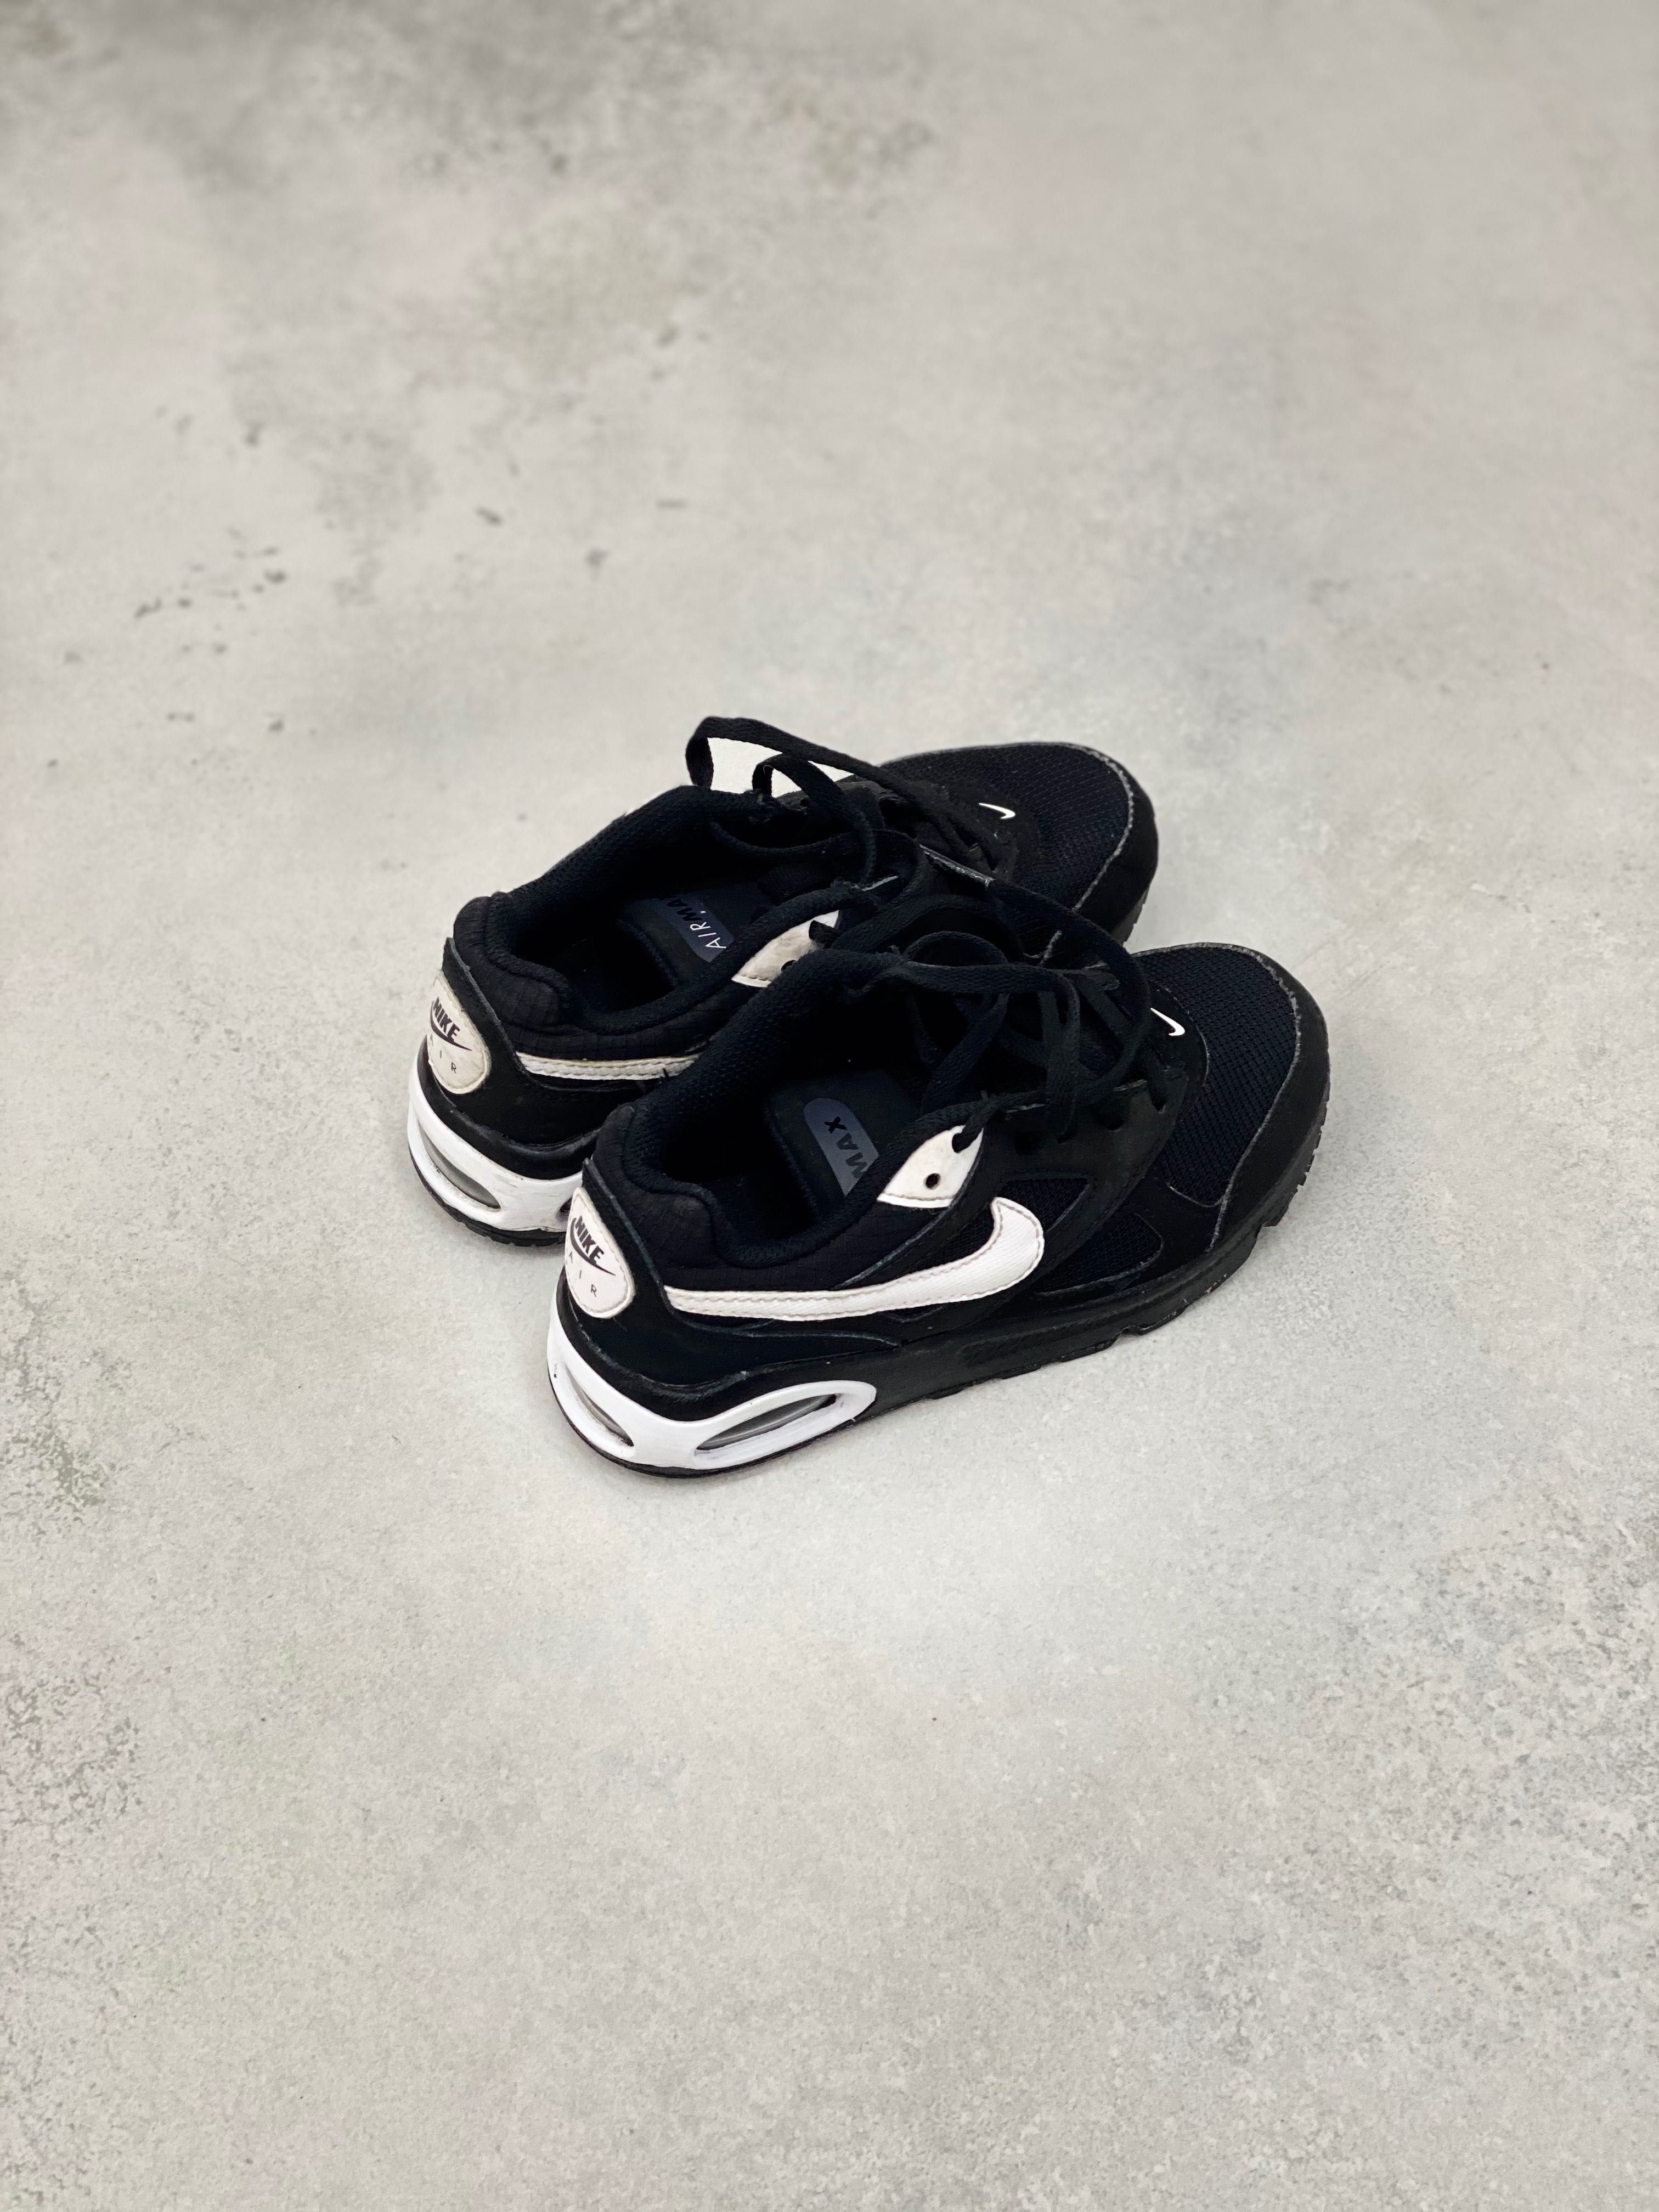 Buty  sportowe biało czarne Nike dla dziecka 28,5 likwidacja